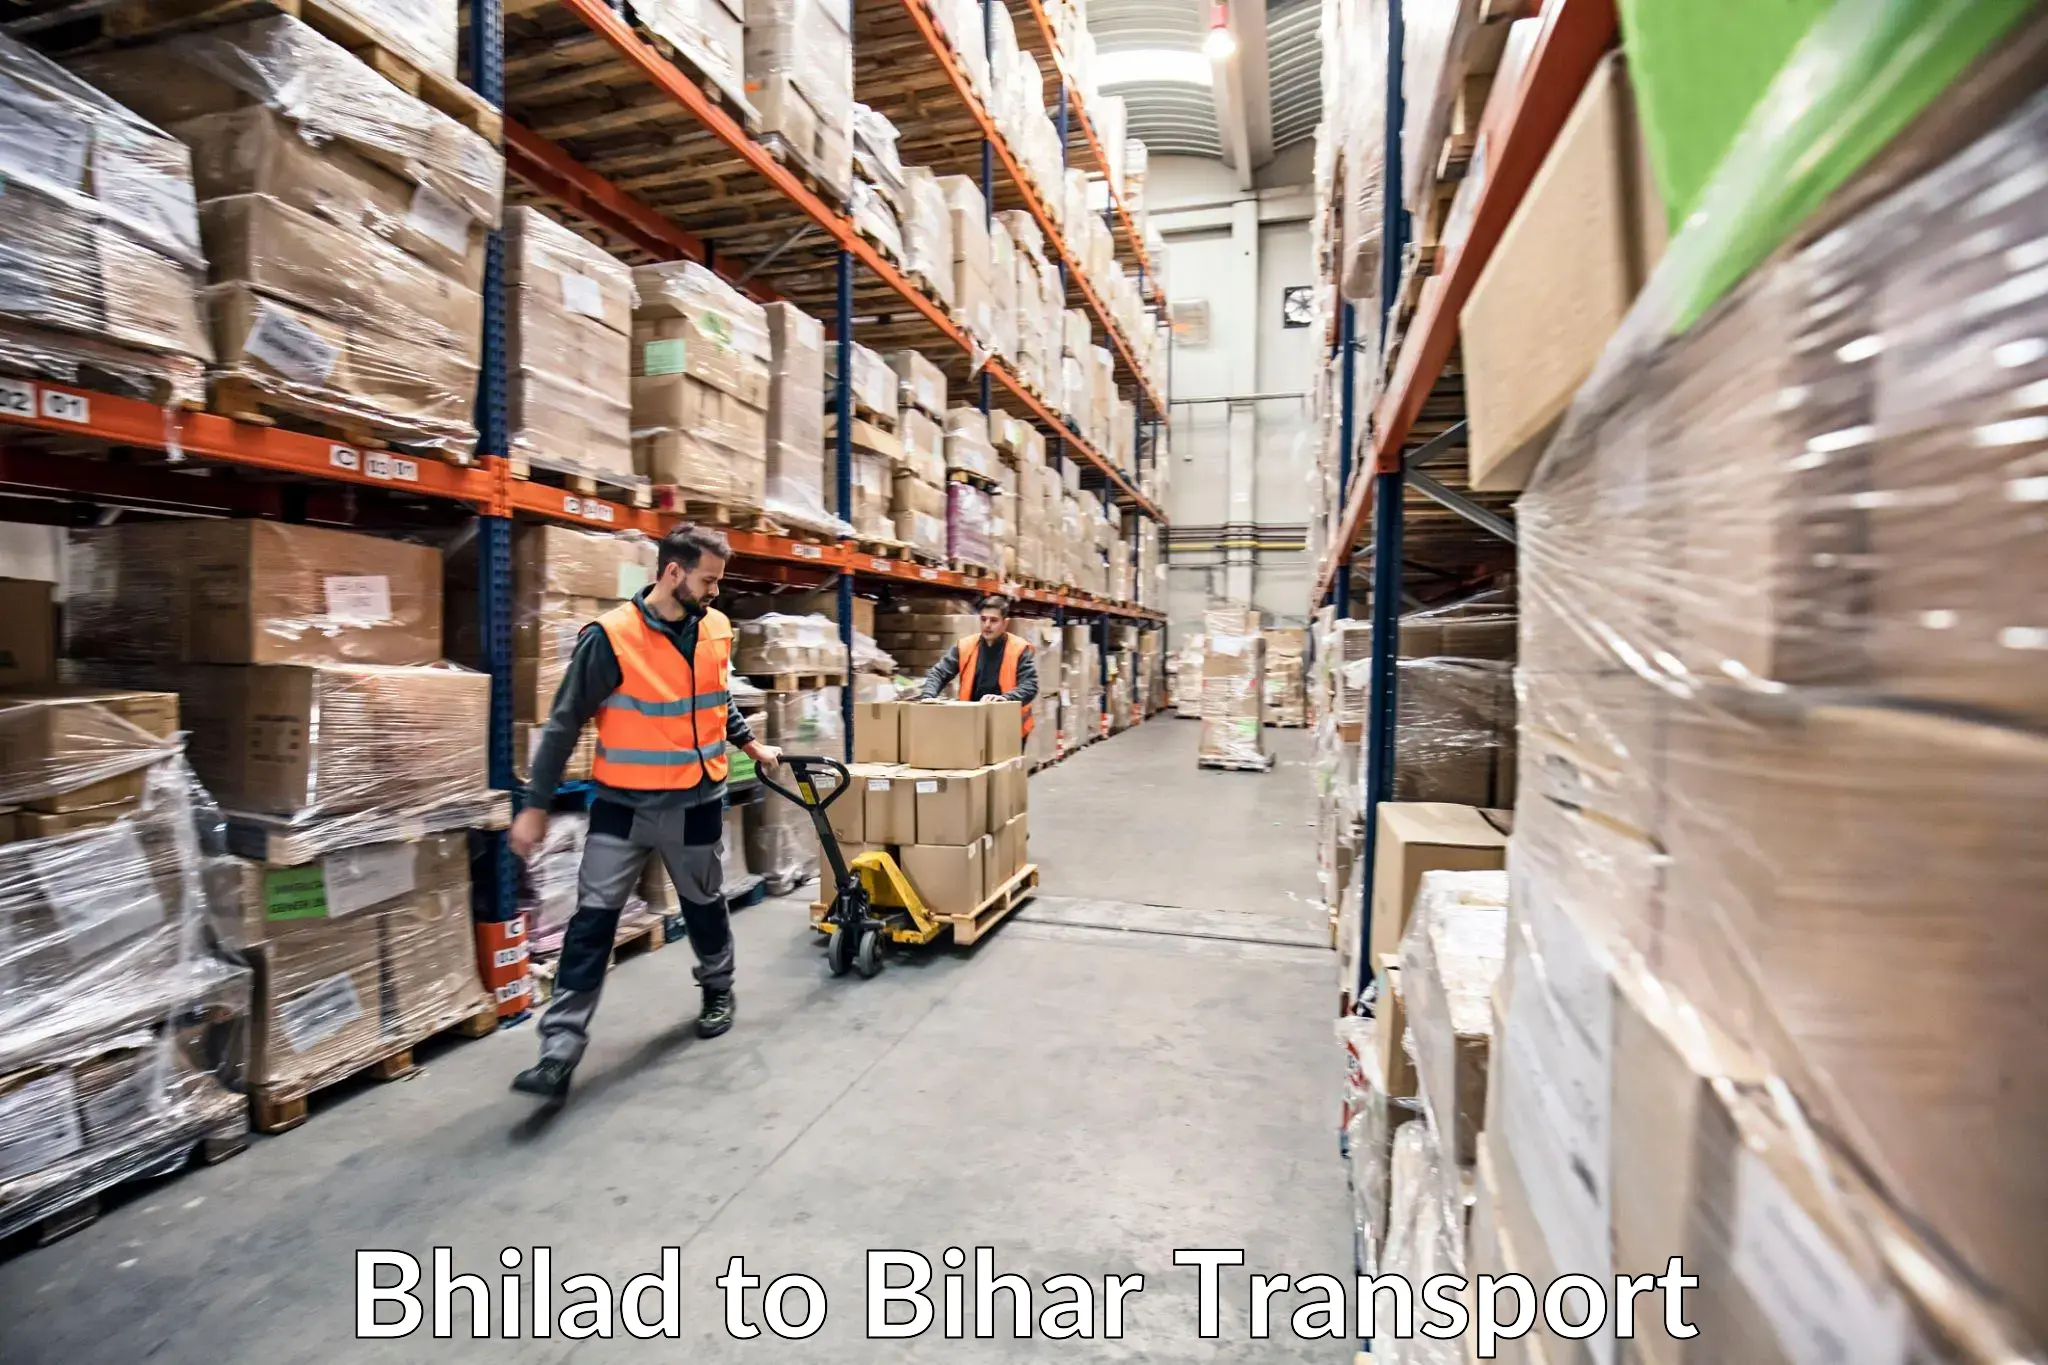 Furniture transport service Bhilad to Khodaganj